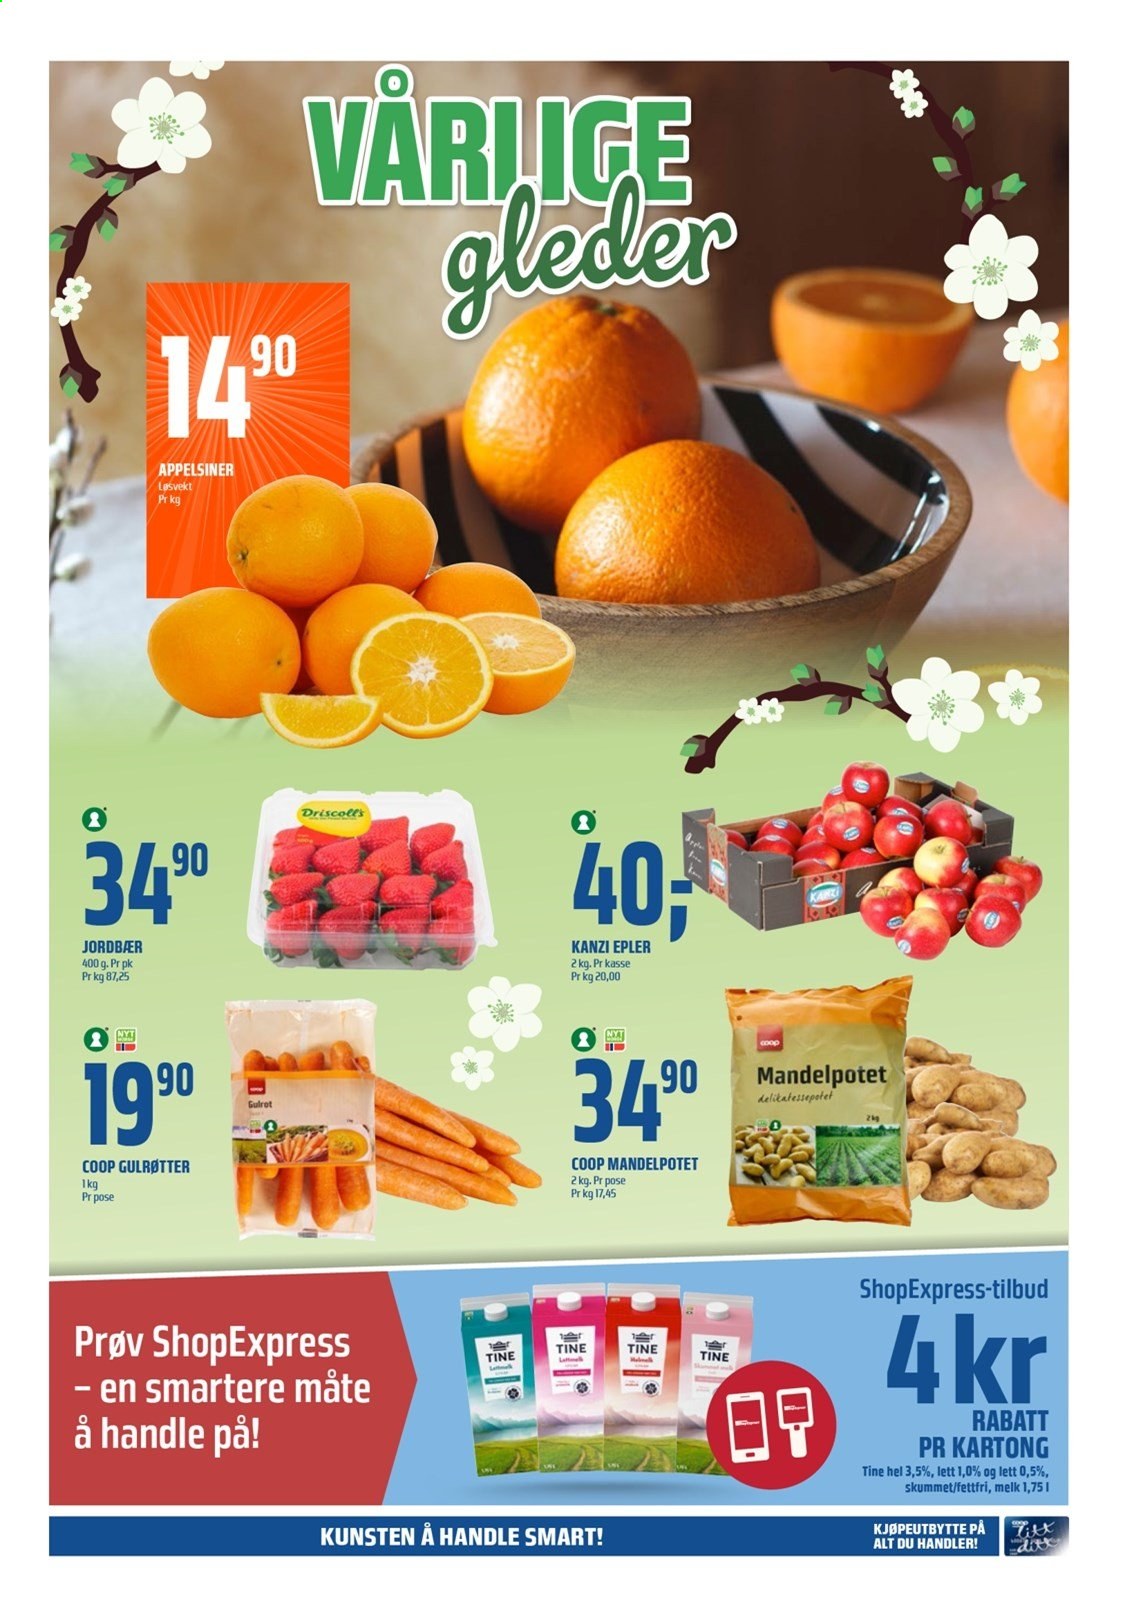 thumbnail - Kundeavis Coop Obs - 7.3.2021 - 13.3.2021 - Produkter fra tilbudsaviser - epler, jordbær, gulrot, melk. Side 3.